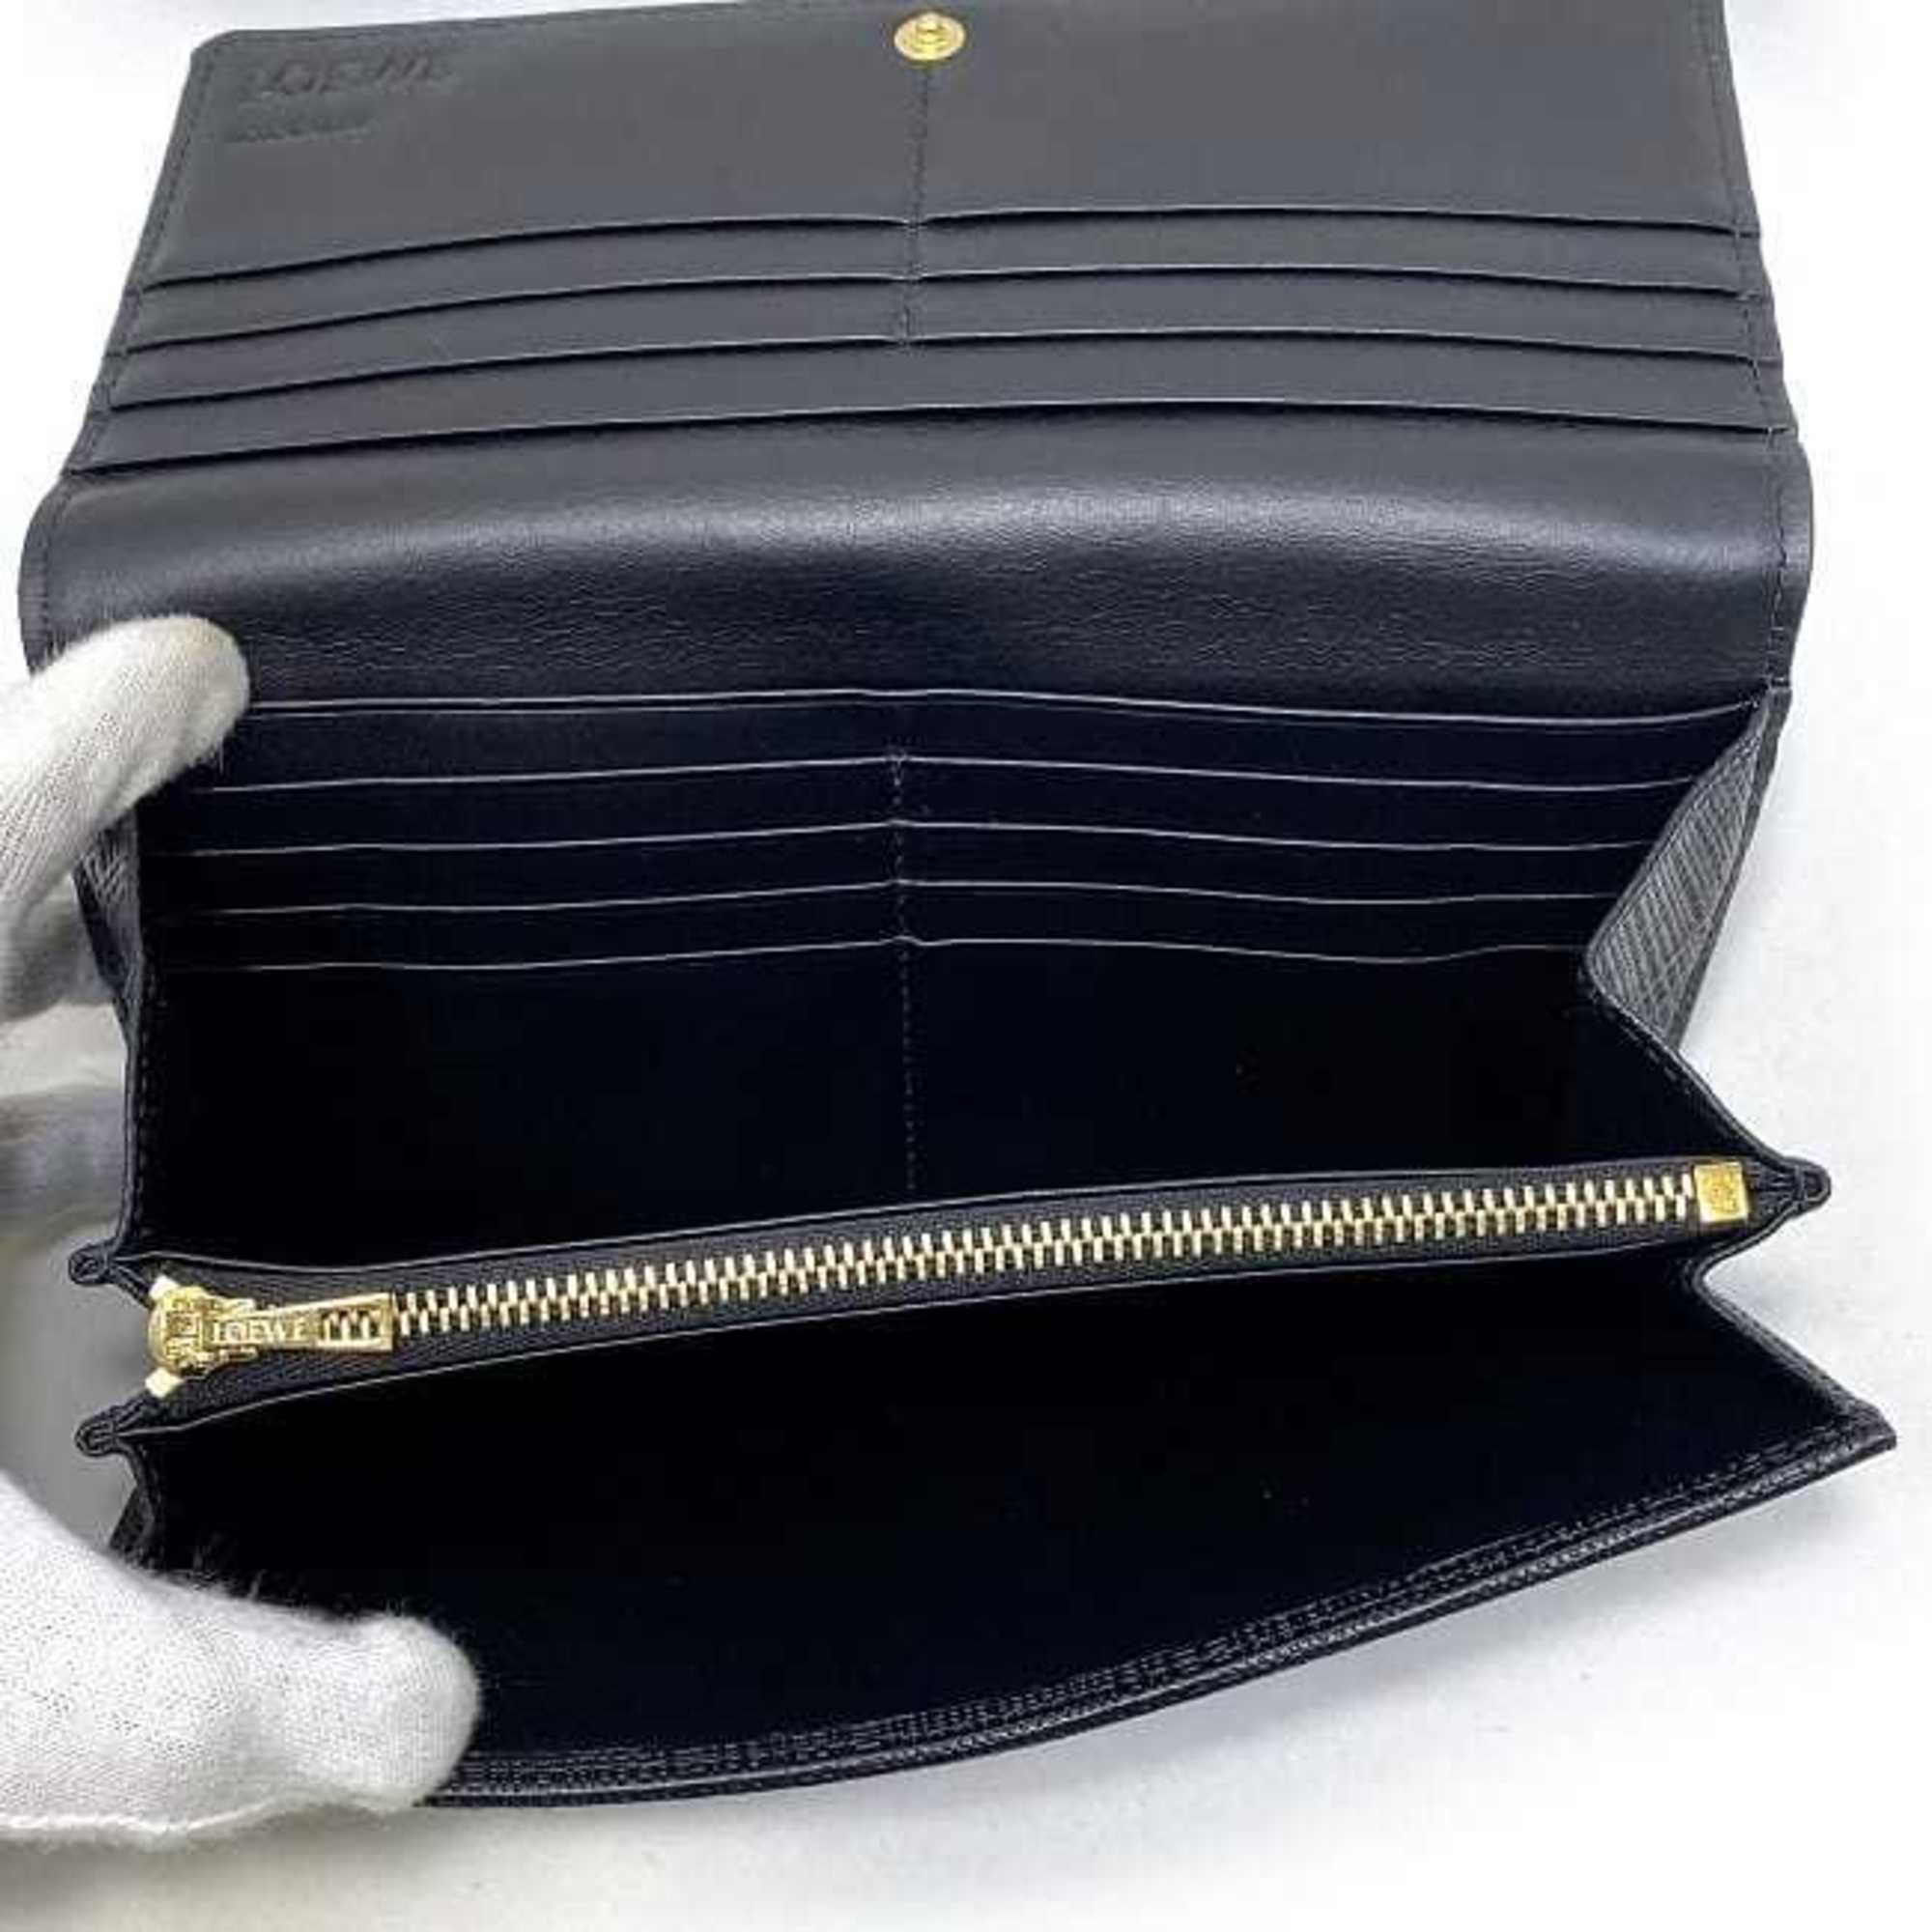 Loewe folio long wallet black gold linen leather LOEWE flap anagram ladies